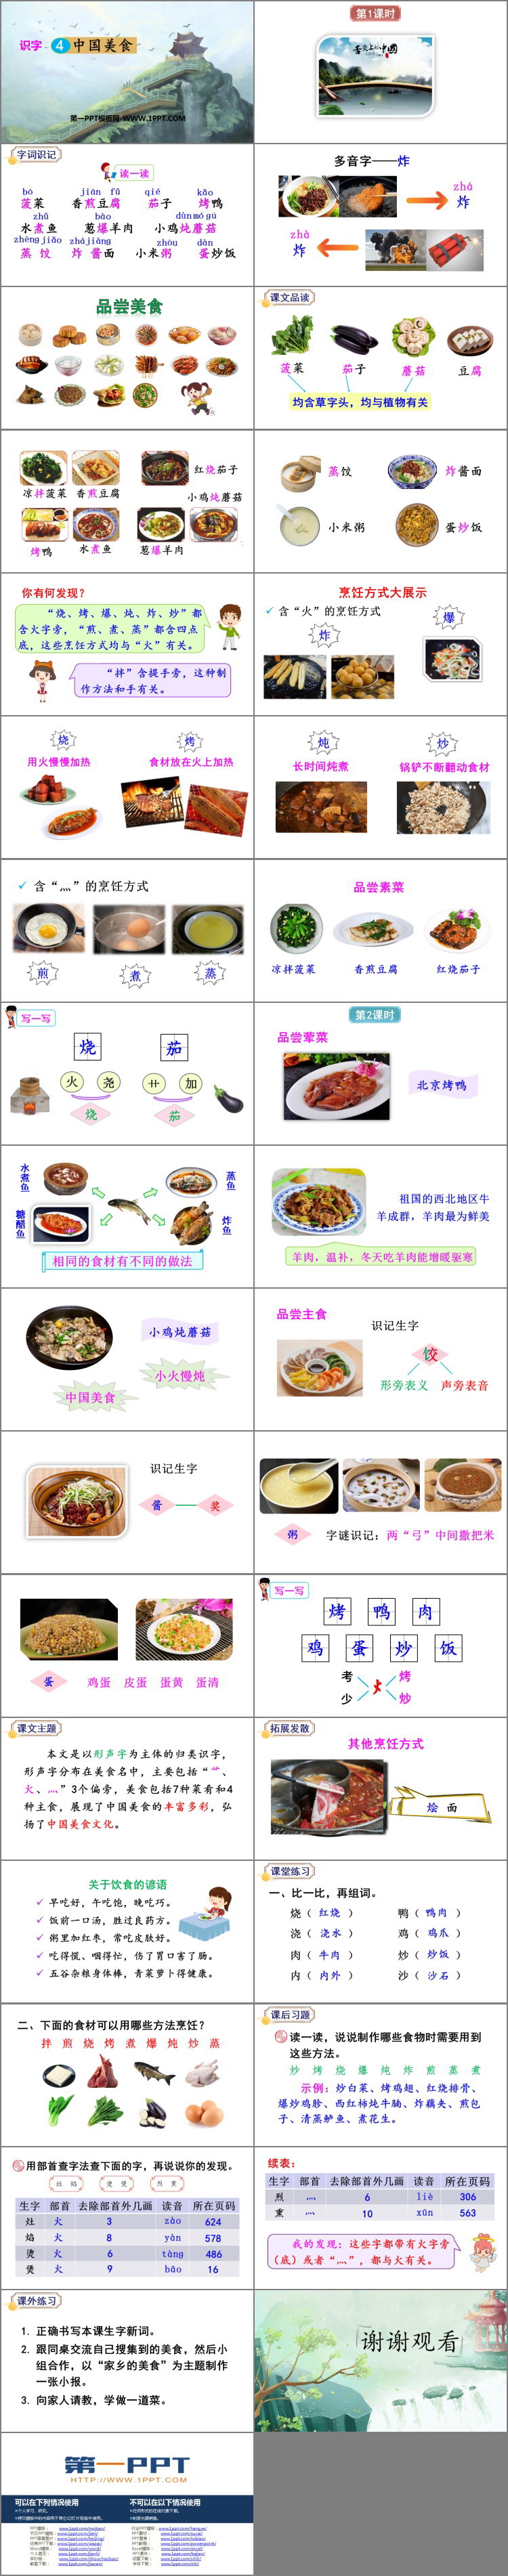 《中国美食》PPT精品课件下载